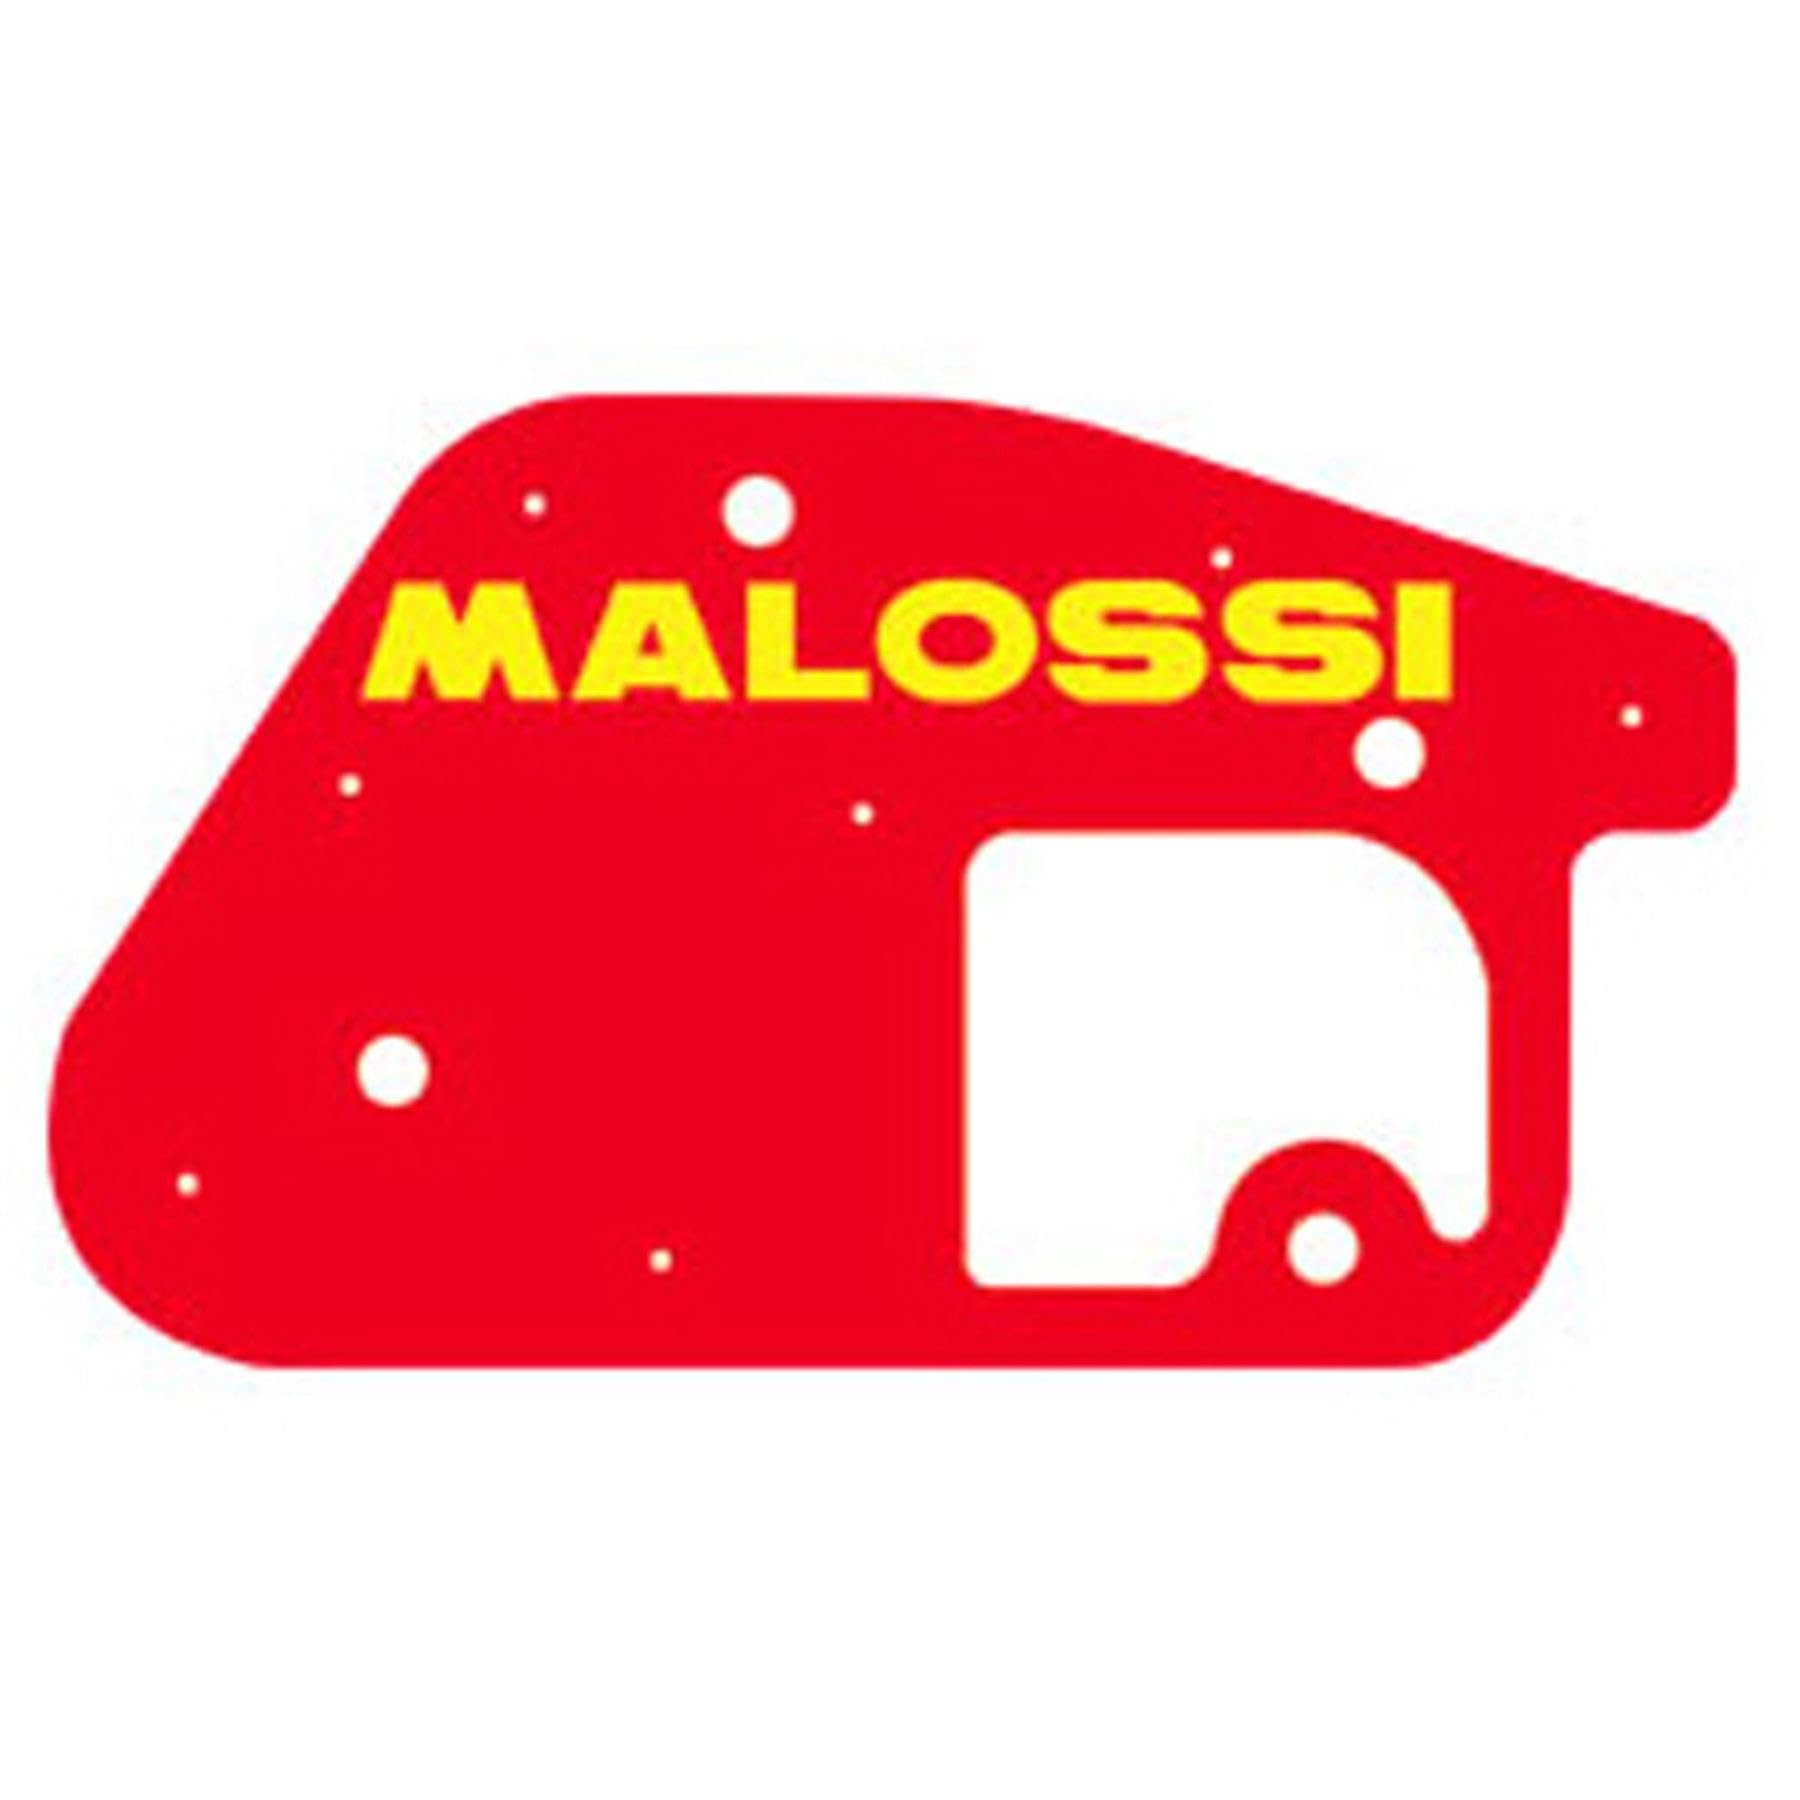 Luftfiltereinsatz Malossi Red Sponge, für original Airbox, MBK Booster, Booster NG, Spirit, Rocket Booster/Yamaha BWS von MALOSSI